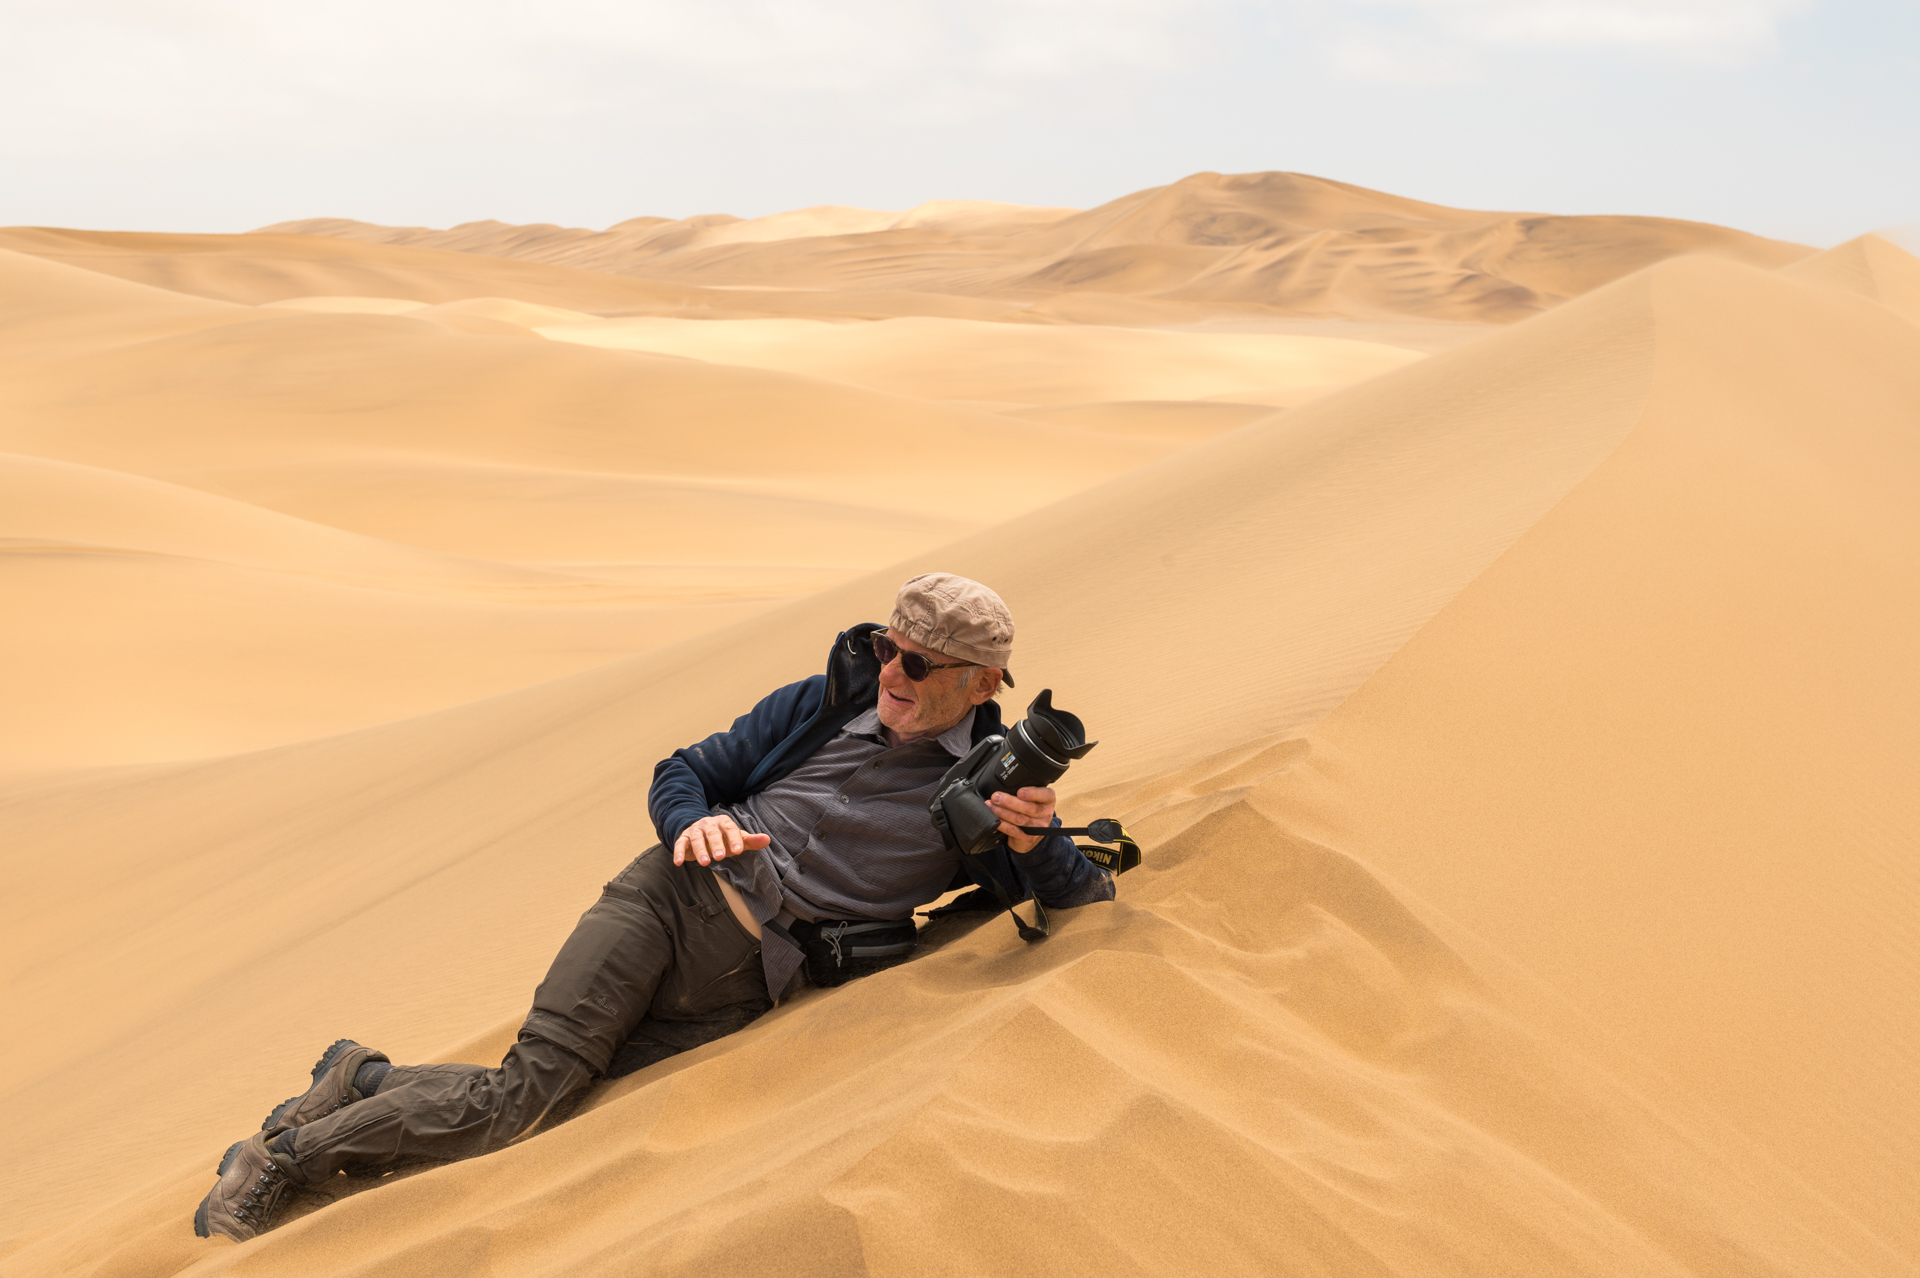 Ein Teilnehmer in Aktion auf einer Sanddüne in Namibia.